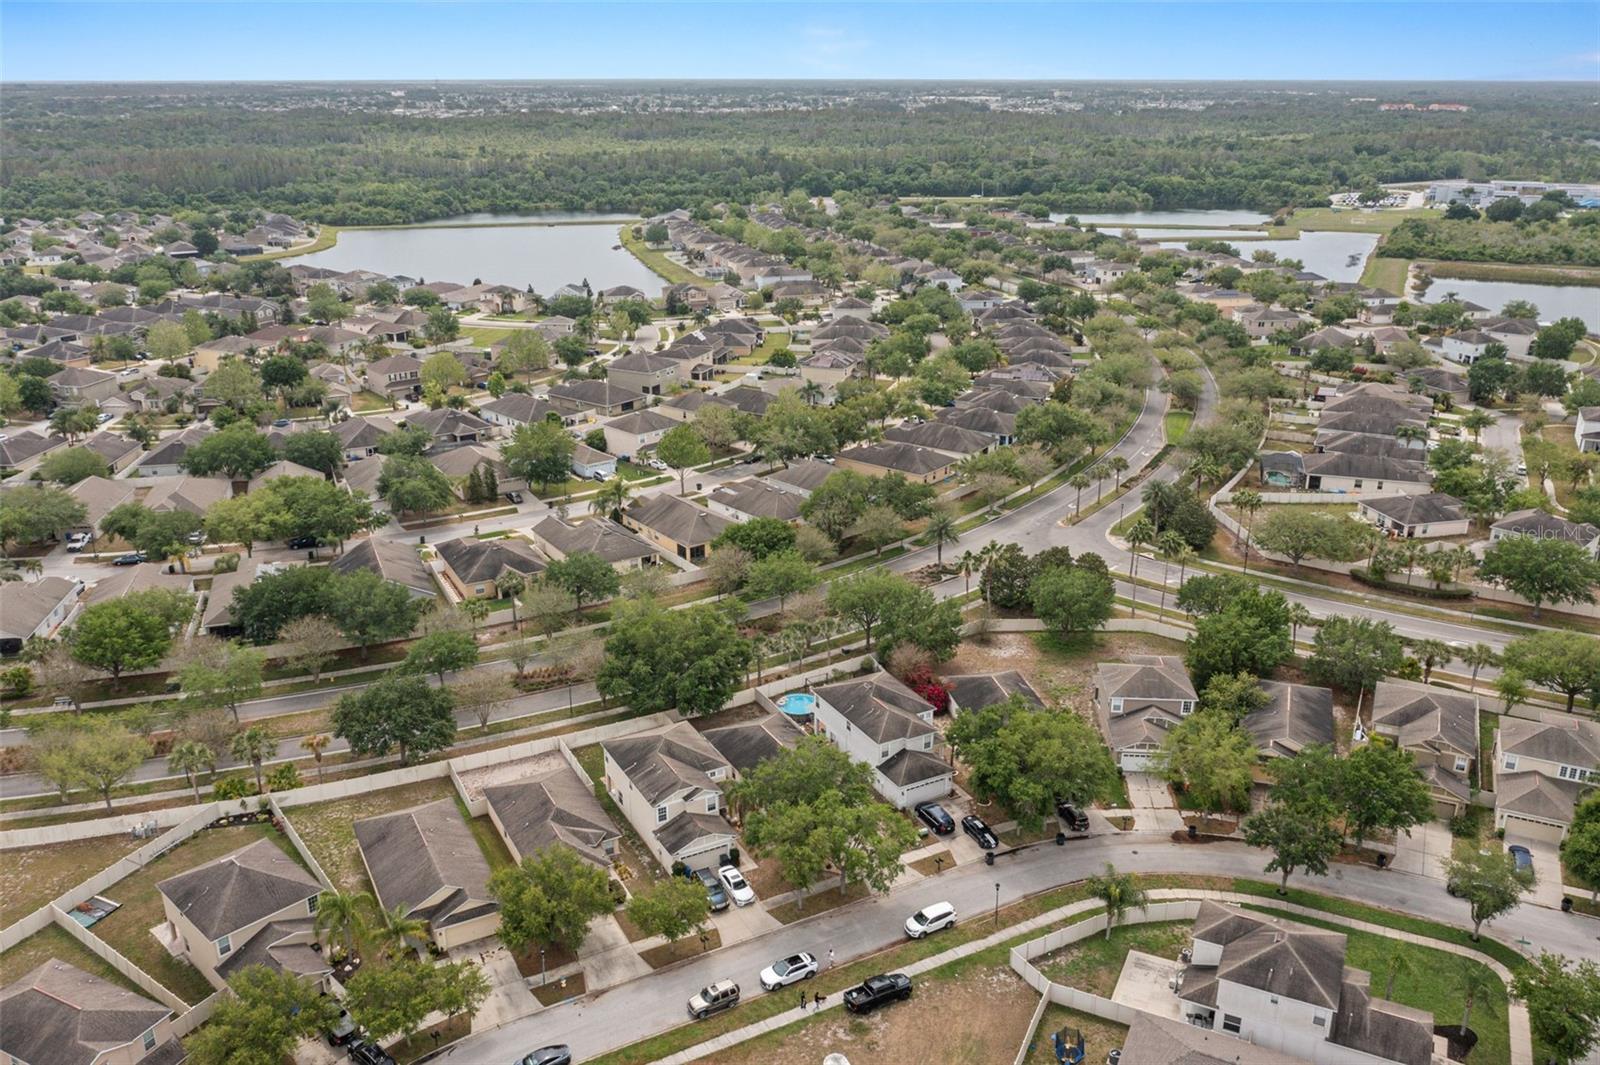 Aerial view of neighborhood